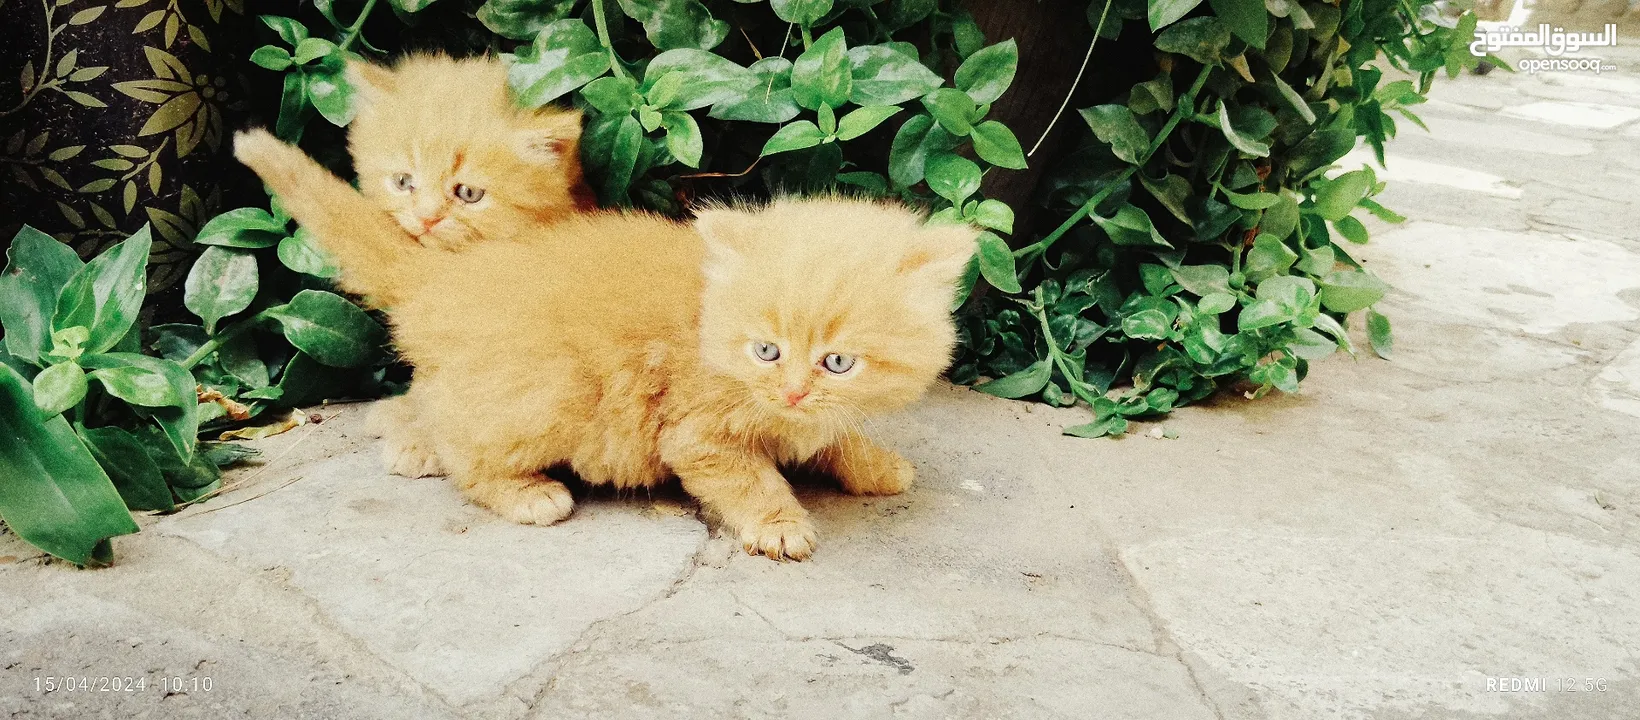 قطط شيرازي من المعدوم لون عسلي